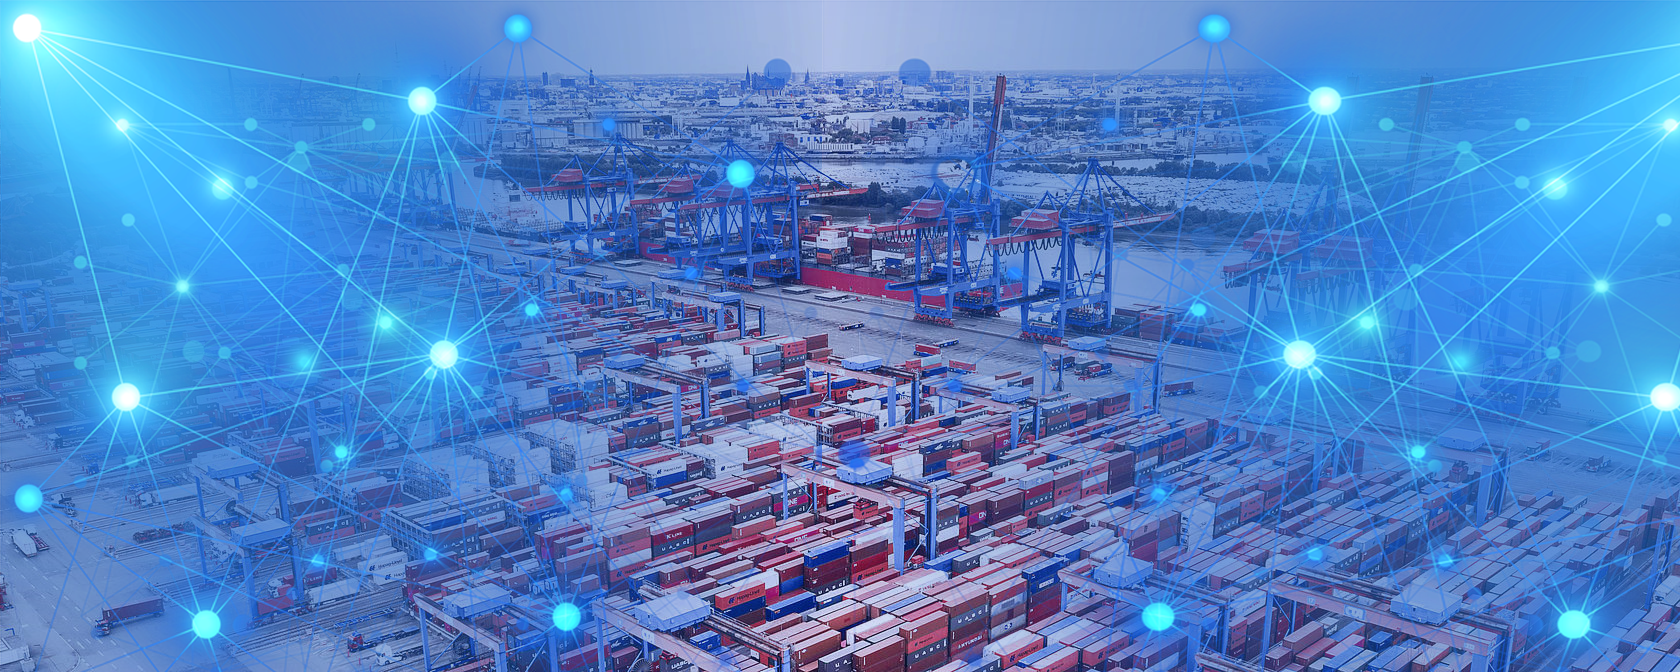 Künstliche Intelligenz in der Logistik auf einem Containerterminal